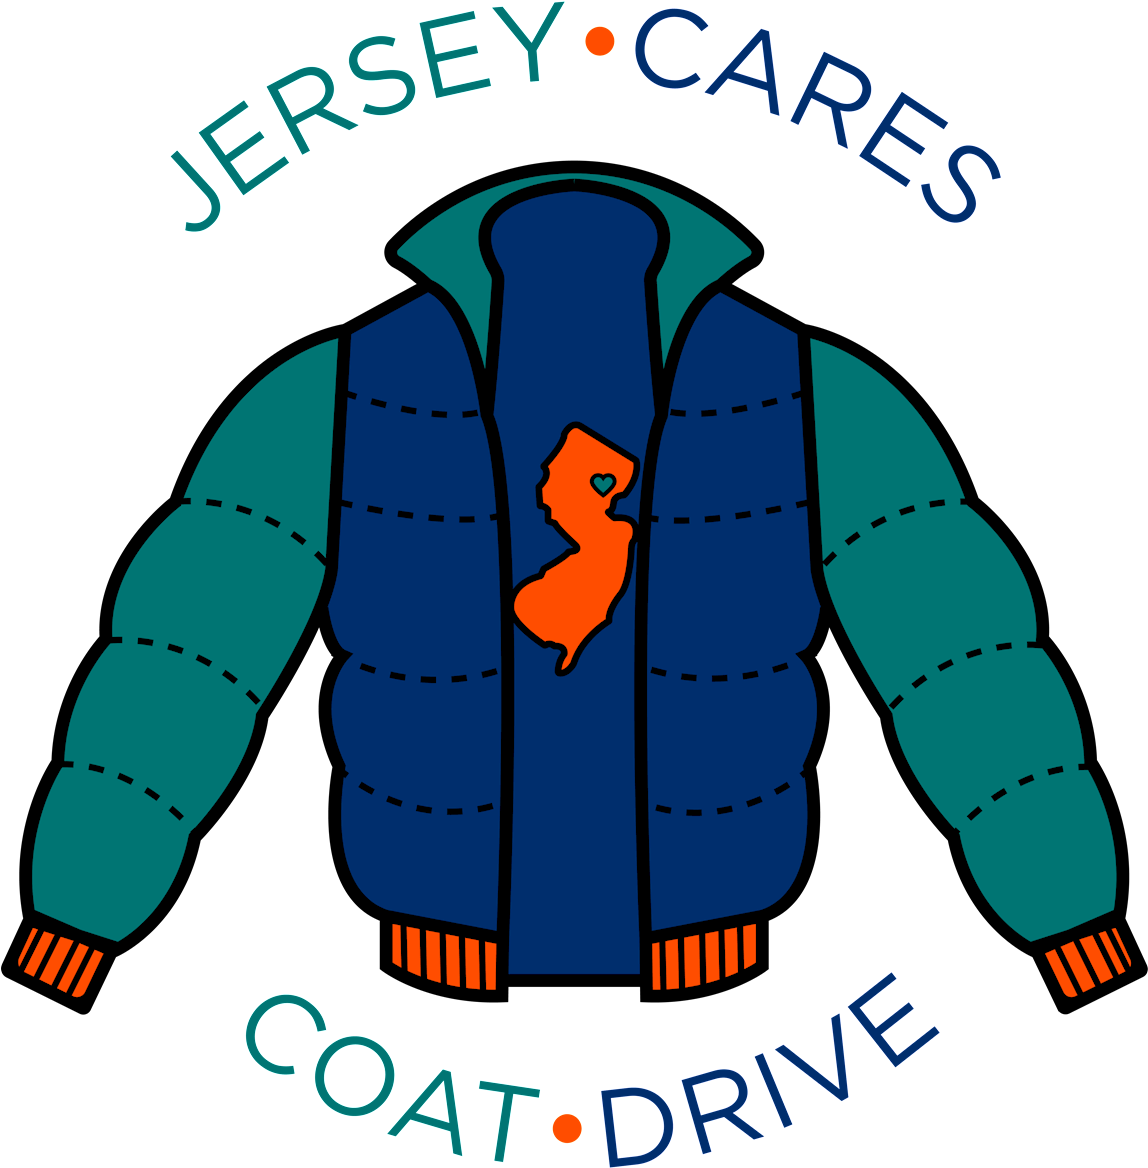 Jersey Cares Coat Drive Logo